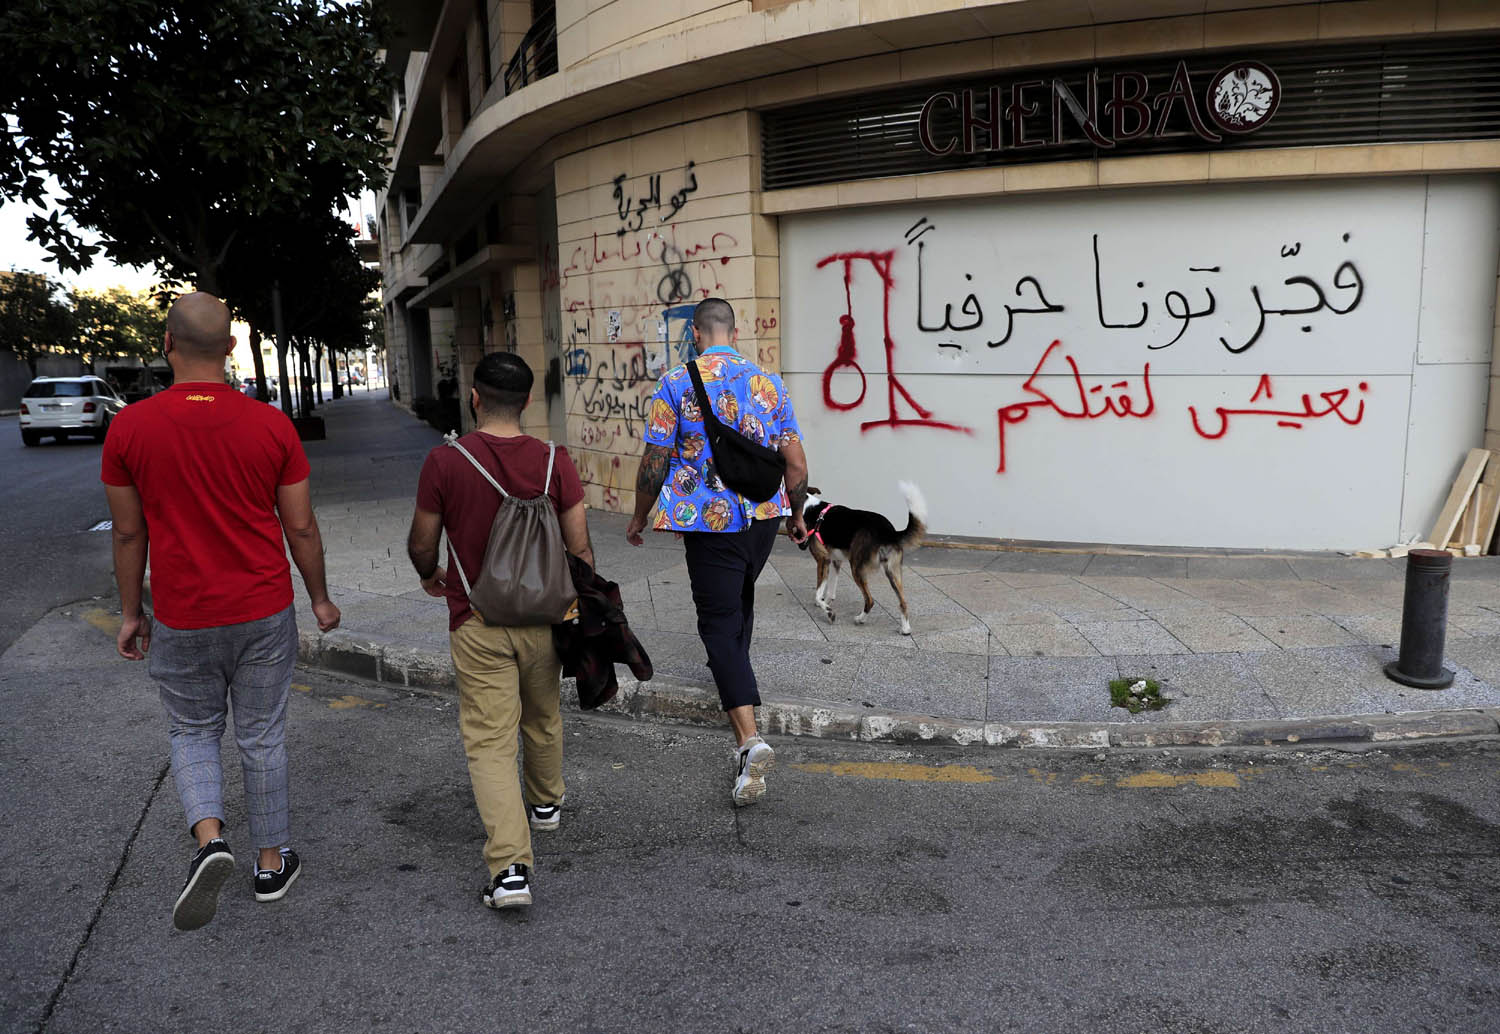 شعارات تدين الطبقة الحاكمة في لبنان